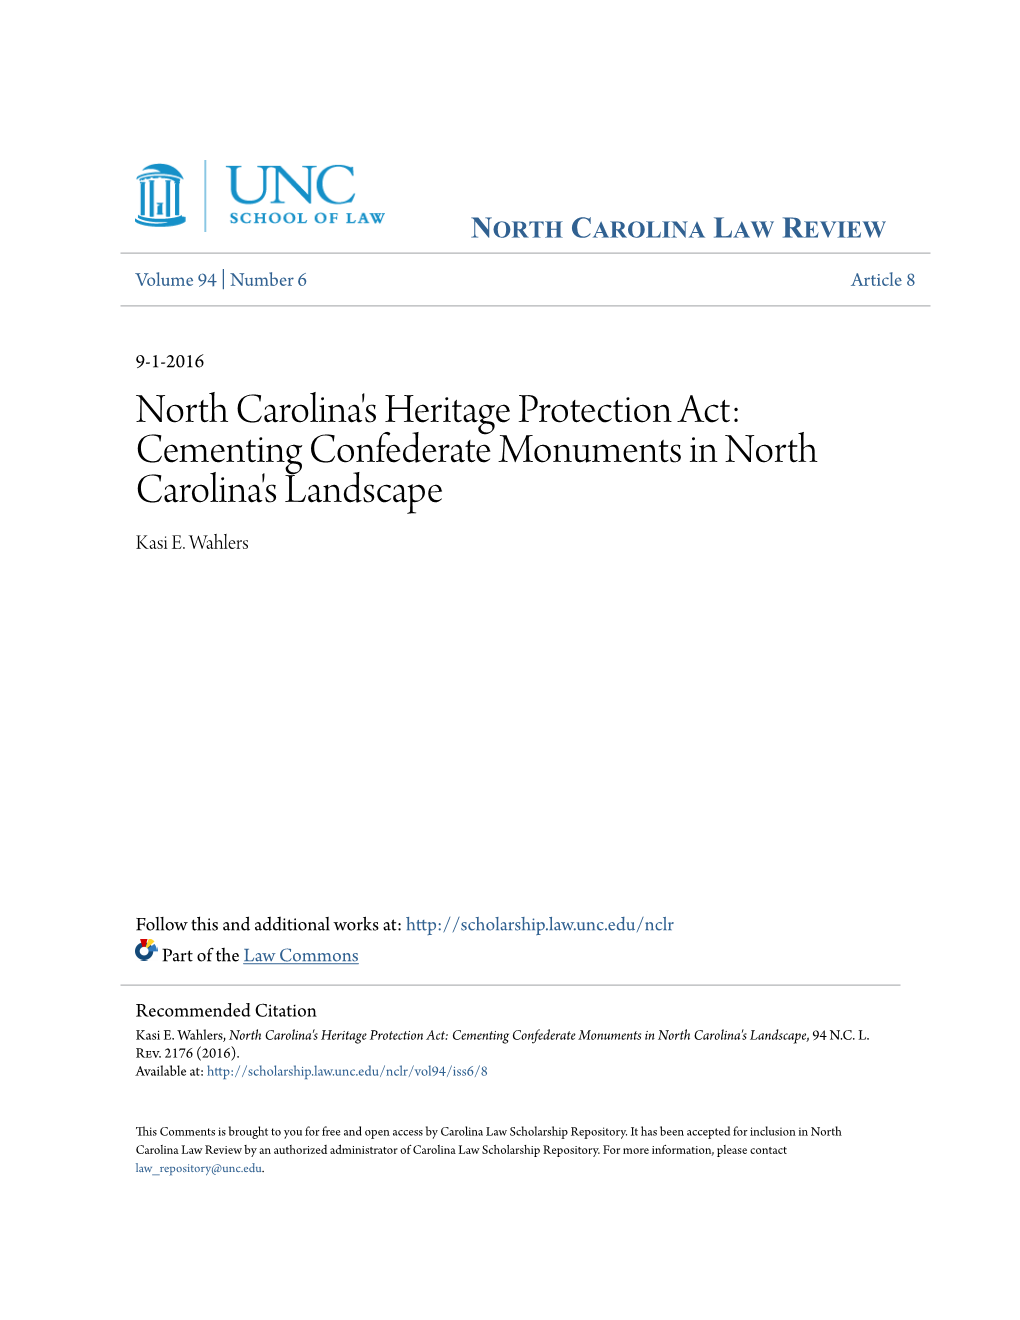 Cementing Confederate Monuments in North Carolina's Landscape Kasi E